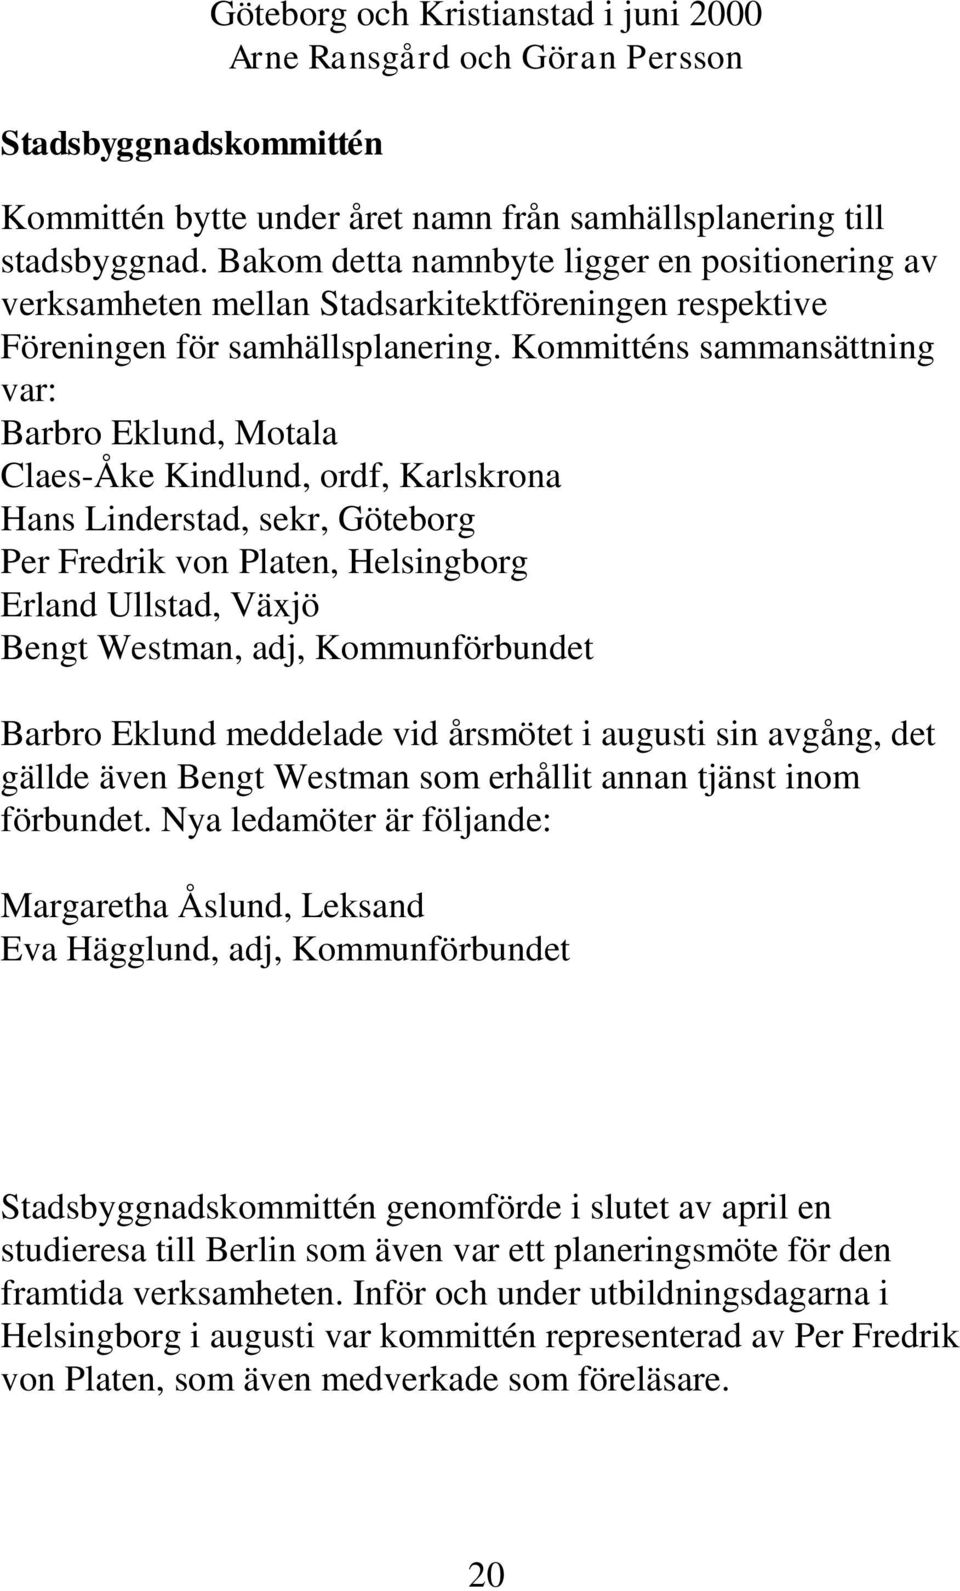 Kommitténs sammansättning var: Barbro Eklund, Motala Claes-Åke Kindlund, ordf, Karlskrona Hans Linderstad, sekr, Göteborg Per Fredrik von Platen, Helsingborg Erland Ullstad, Växjö Bengt Westman, adj,